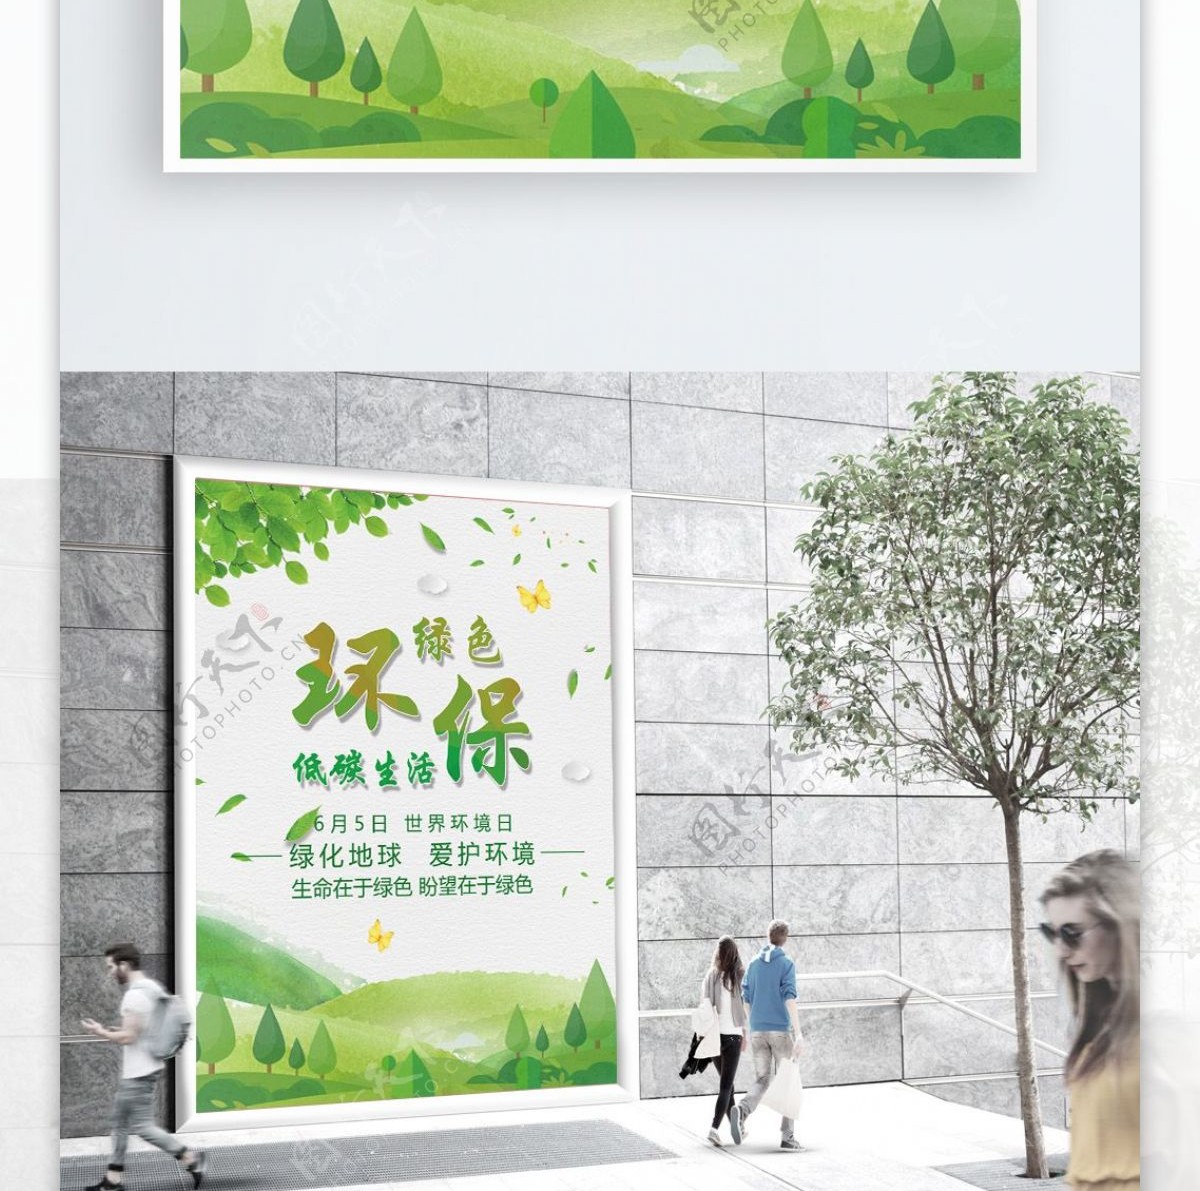 绿色清新保护环境公益海报模板